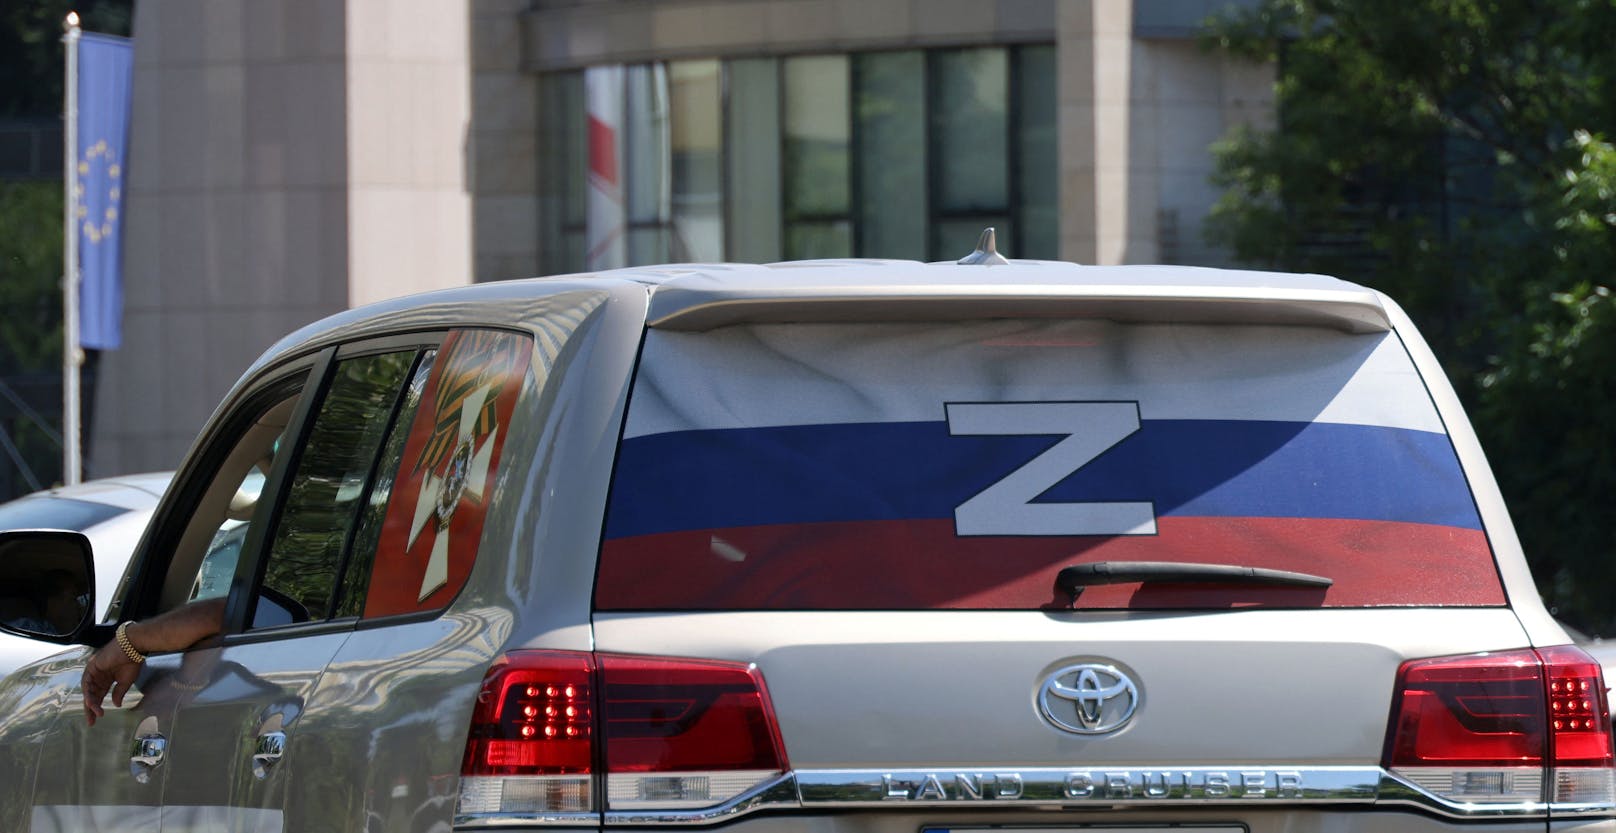 Ukrainische Autos mit Kriegssymbol in Wien beschmiert